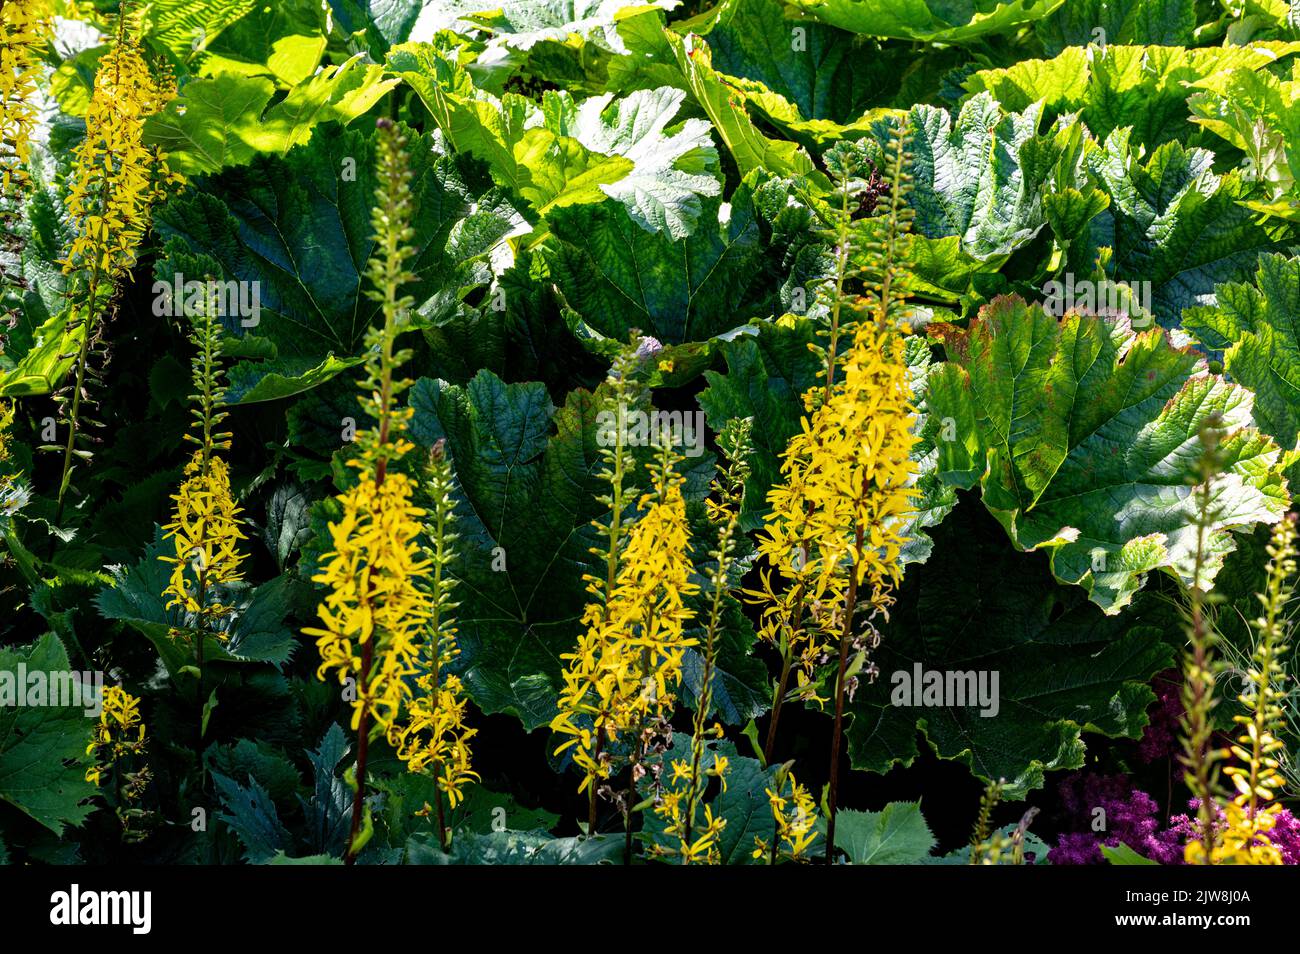 ligularia die Rakete, Leopardenpflanze die Rakete, Ligularia przewalskii die Rakete, Asteraceae.leuchtend gelbe Sommerblumen. Stockfoto